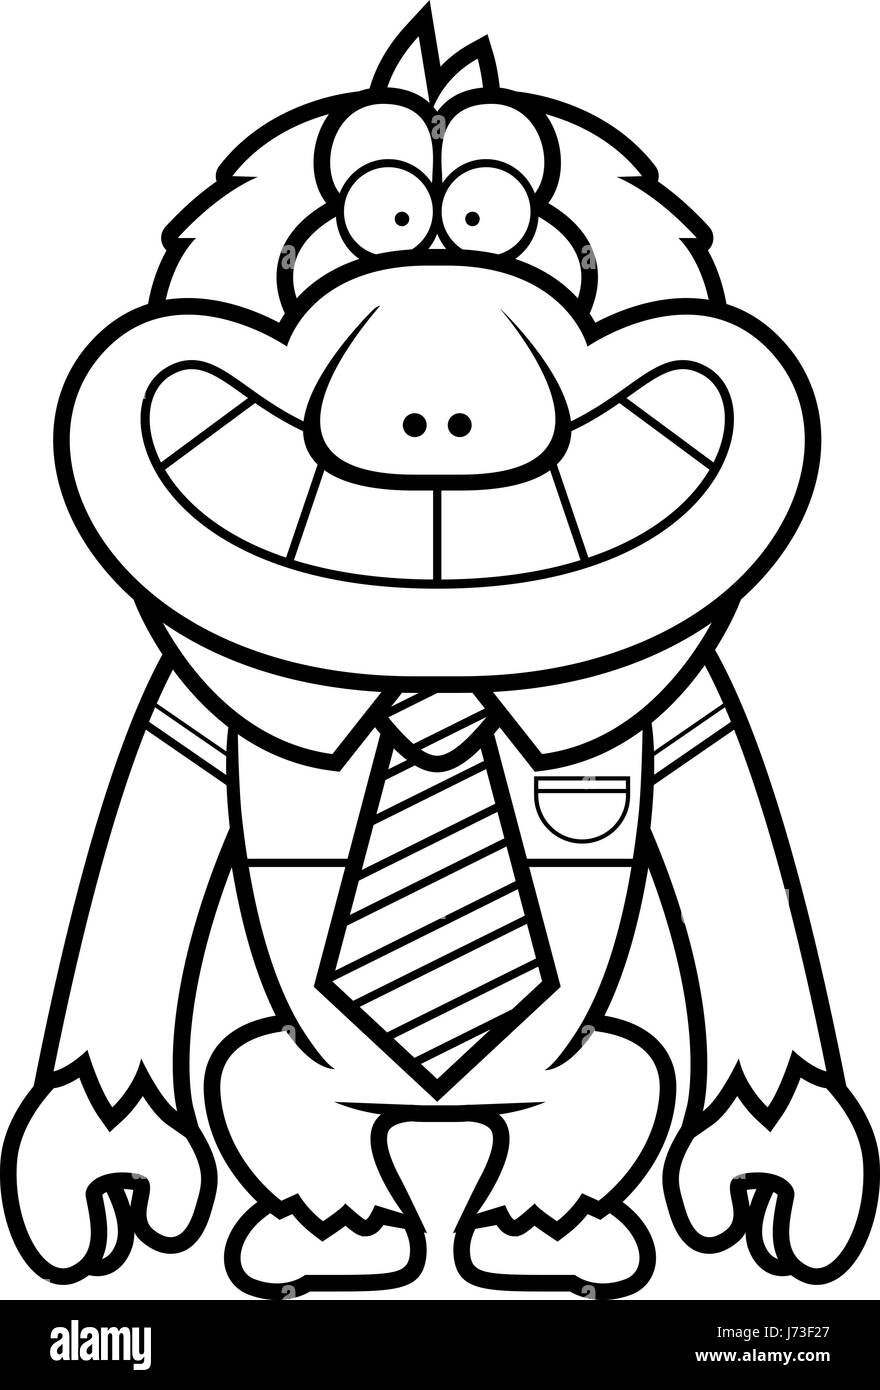 Un cartoon illustrazione di un Macaque giapponese in una cravatta. Illustrazione Vettoriale